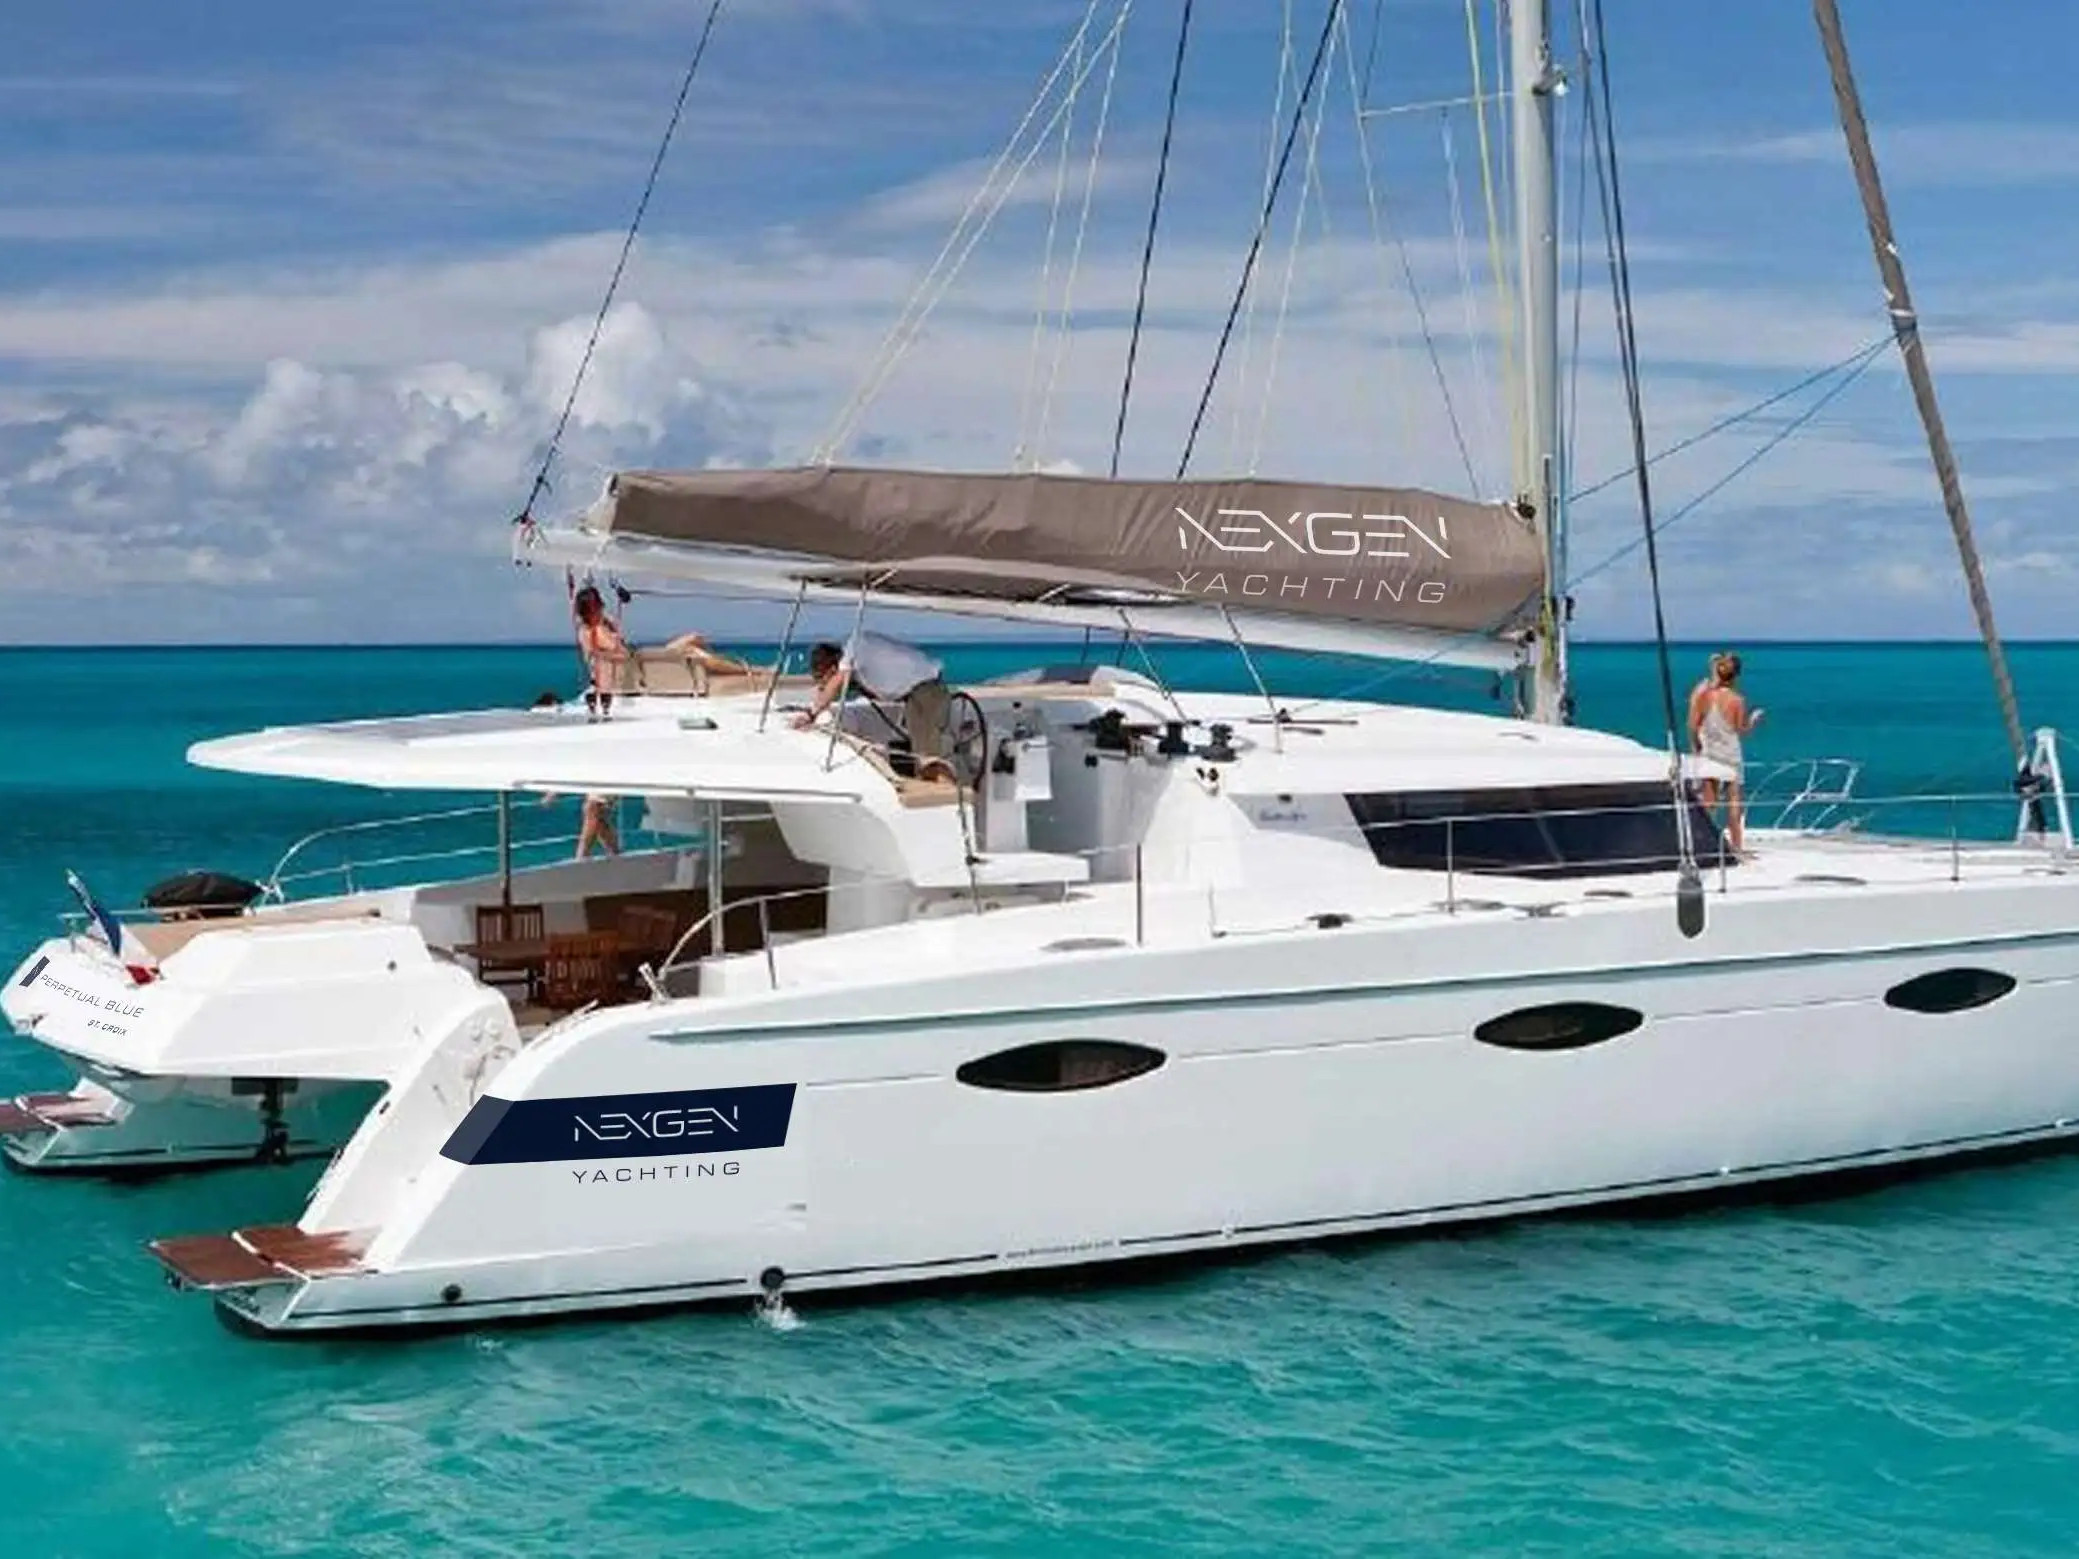 Sanya 57 - Luxury yacht charter British Virgin Islands & Boat hire in British Virgin Islands Tortola Road Town Fort Burt Marina 1